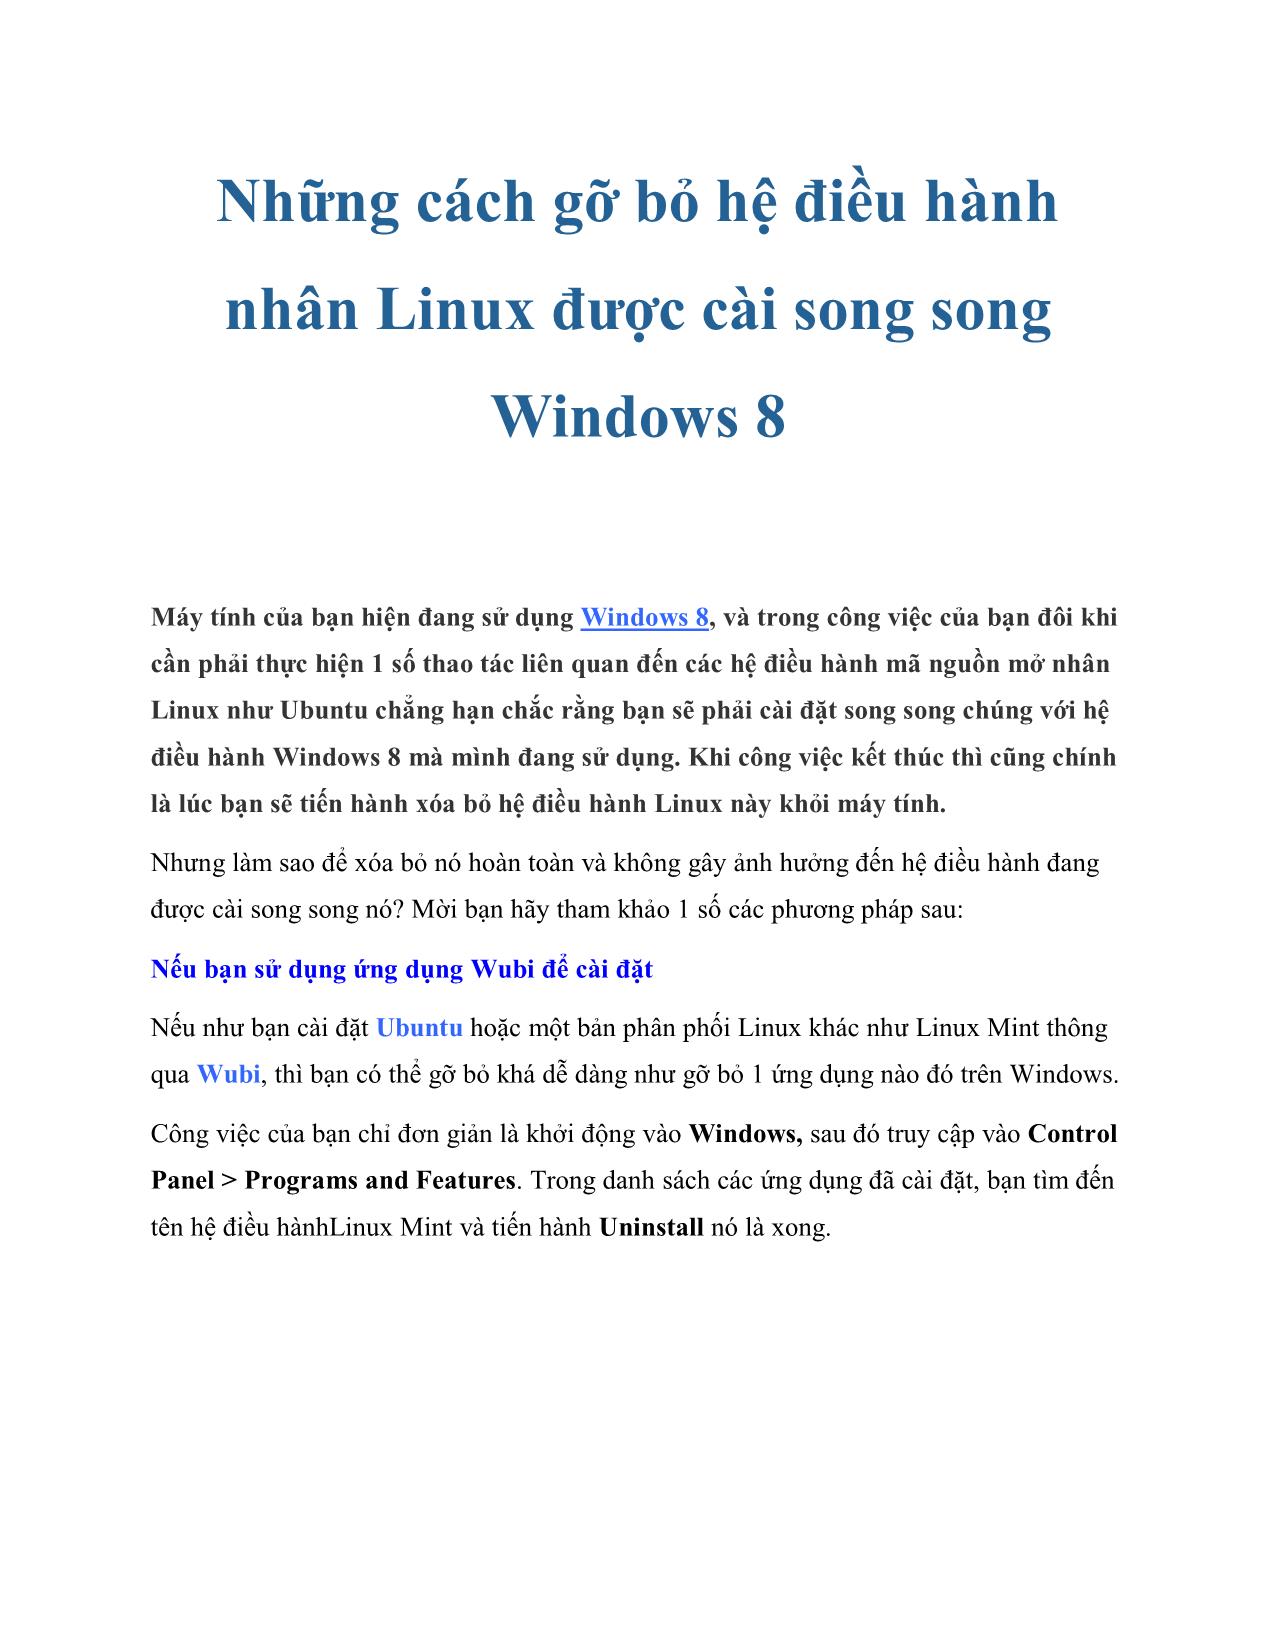 Những cách gỡ bỏ hệ điều hành nhân Linux được cài song song Windows 8 trang 1